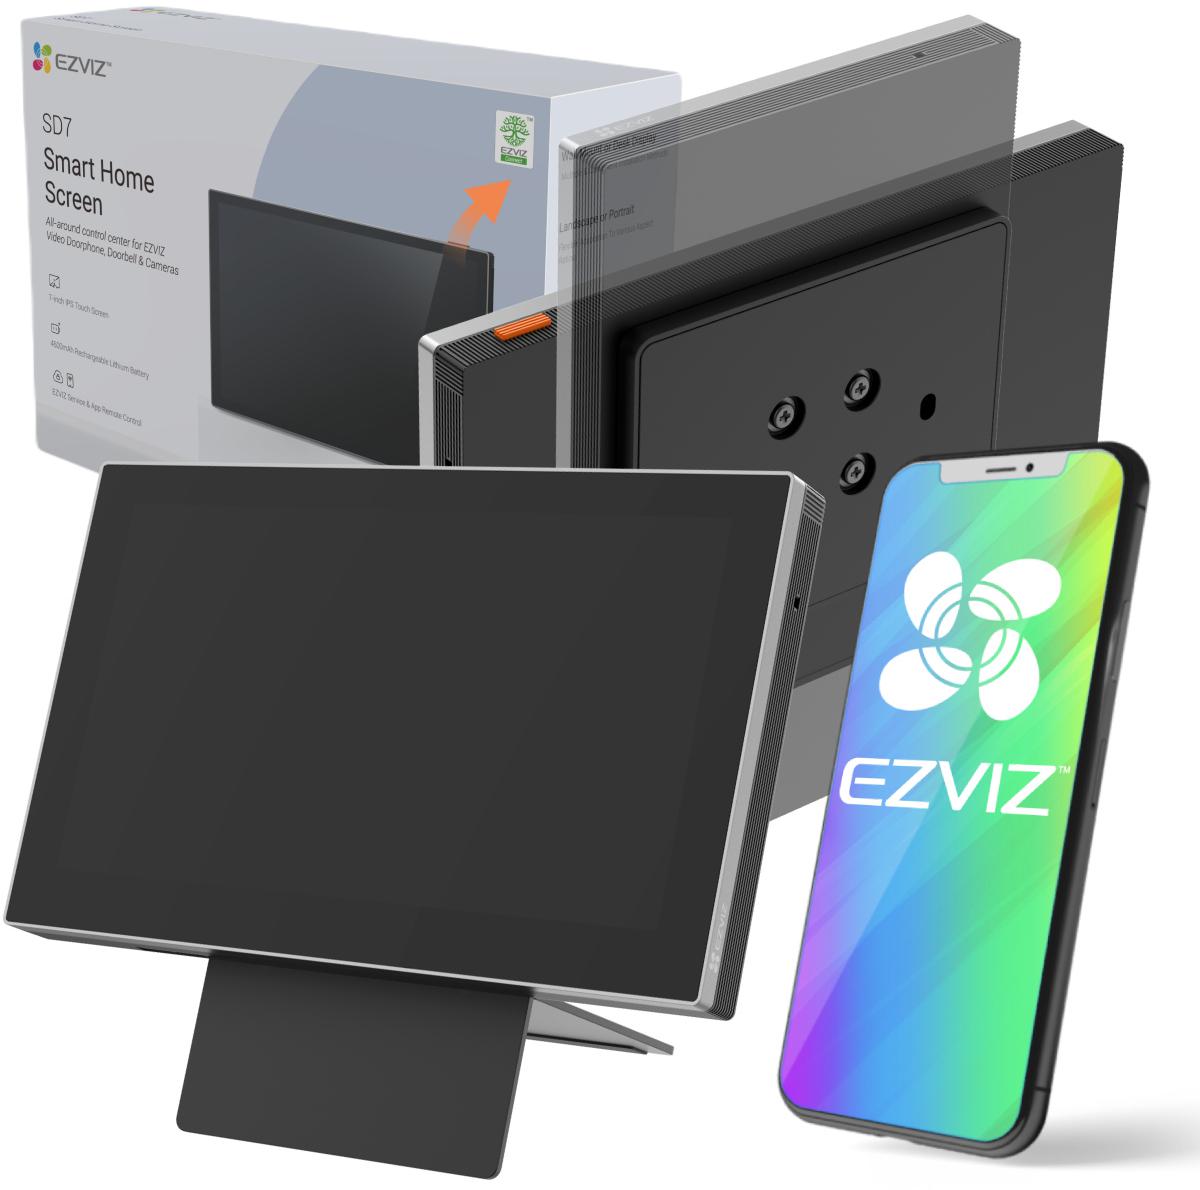 Bezprzewodowy monitor bezpieczeństwa EZVIZ SD7 inteligentny ekran - najważniejsze cechy: